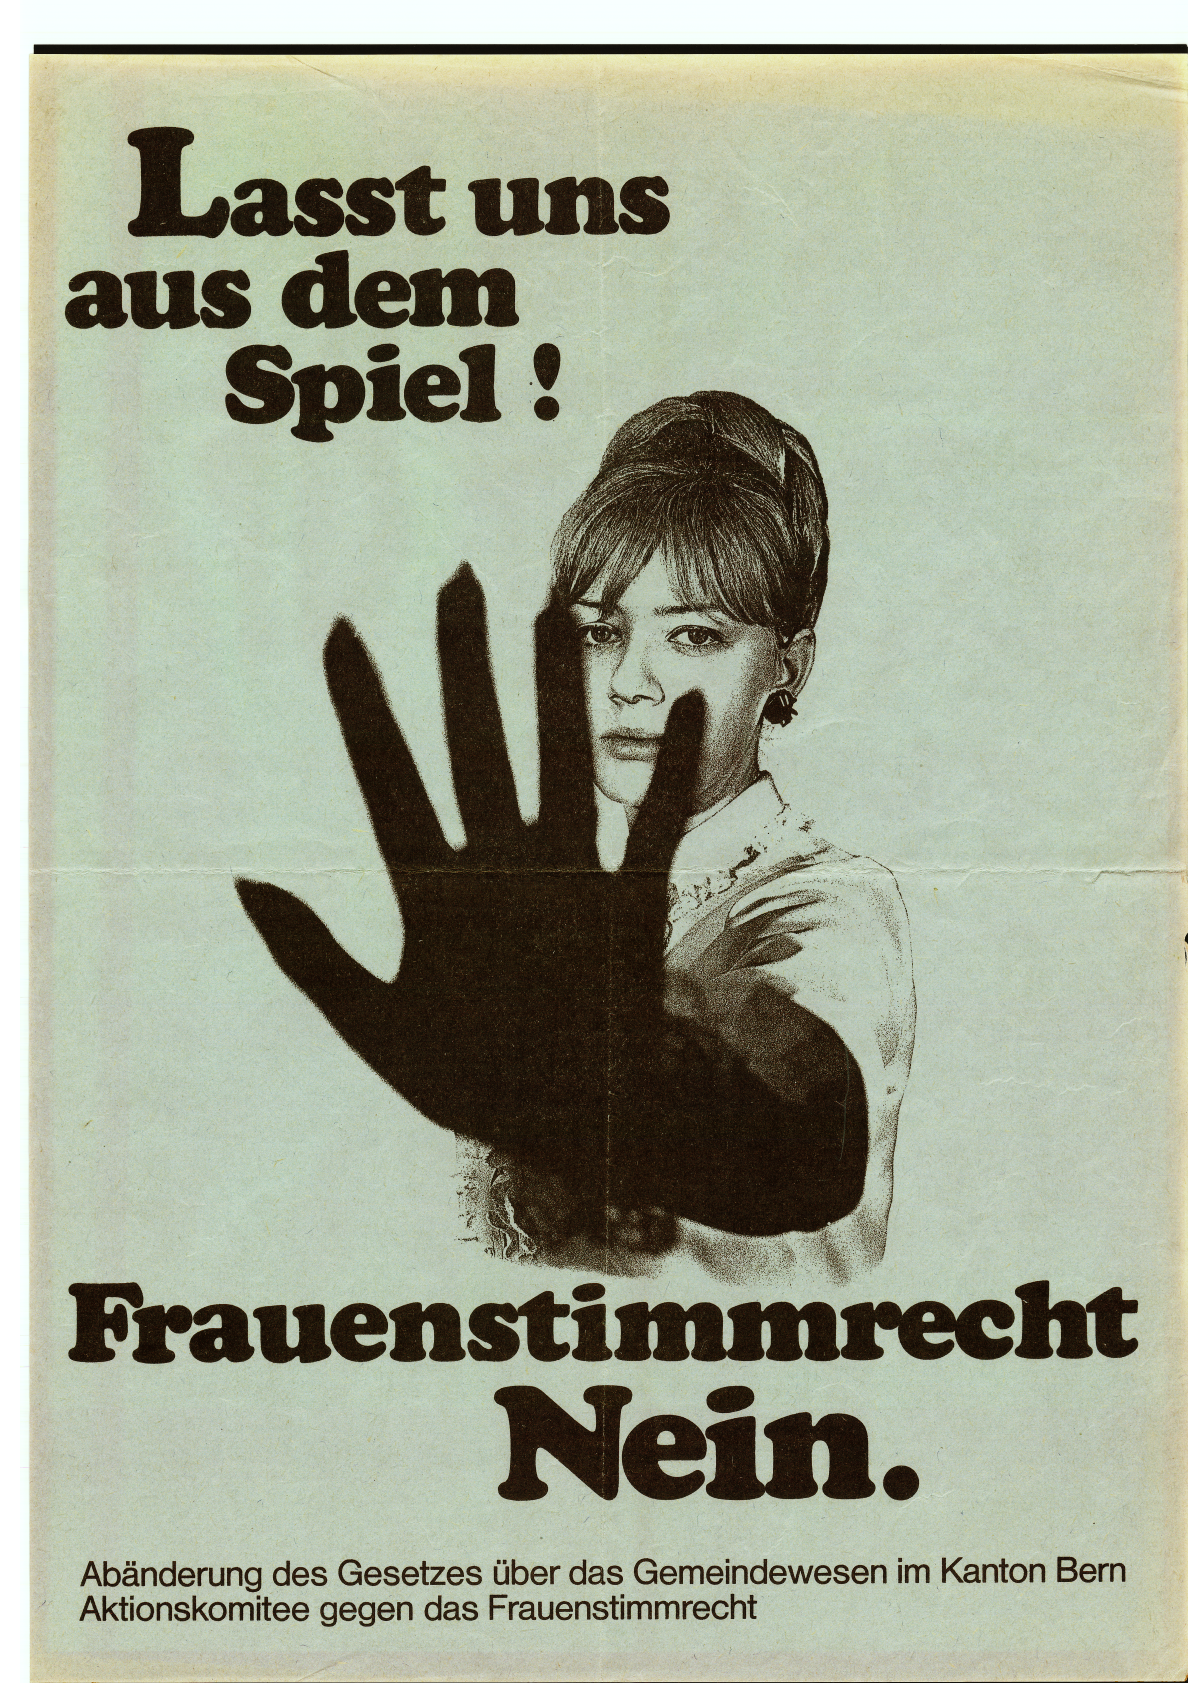 Comitato d'azione per i diritti di voto delle donne, 1968 © Fondazione Gosteli, collezione di manifesti